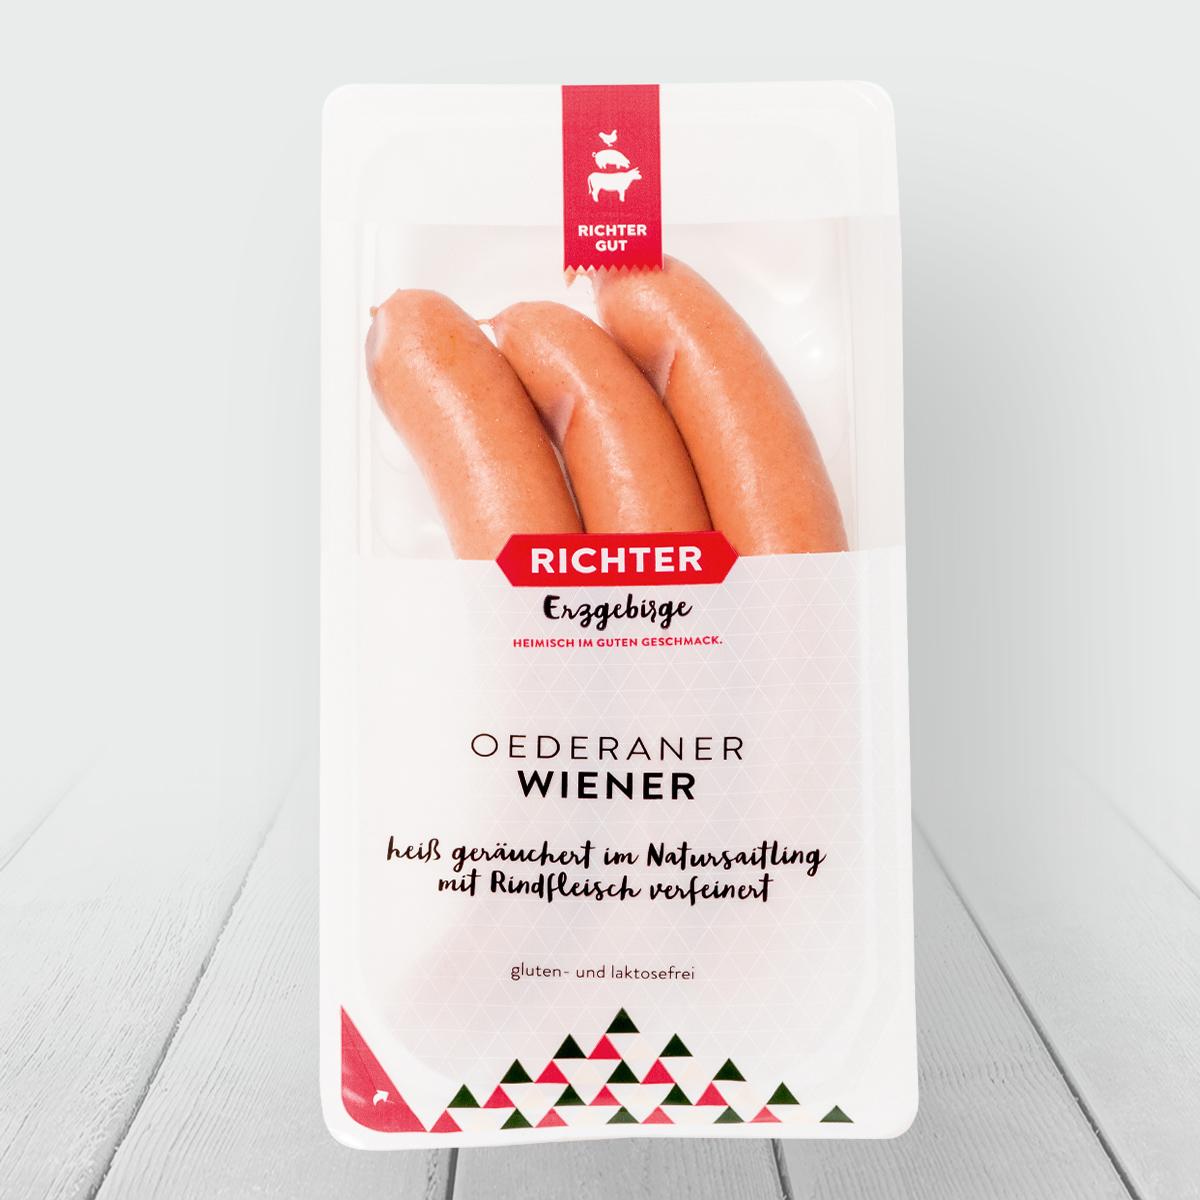 Oederaner Wiener Verpackung